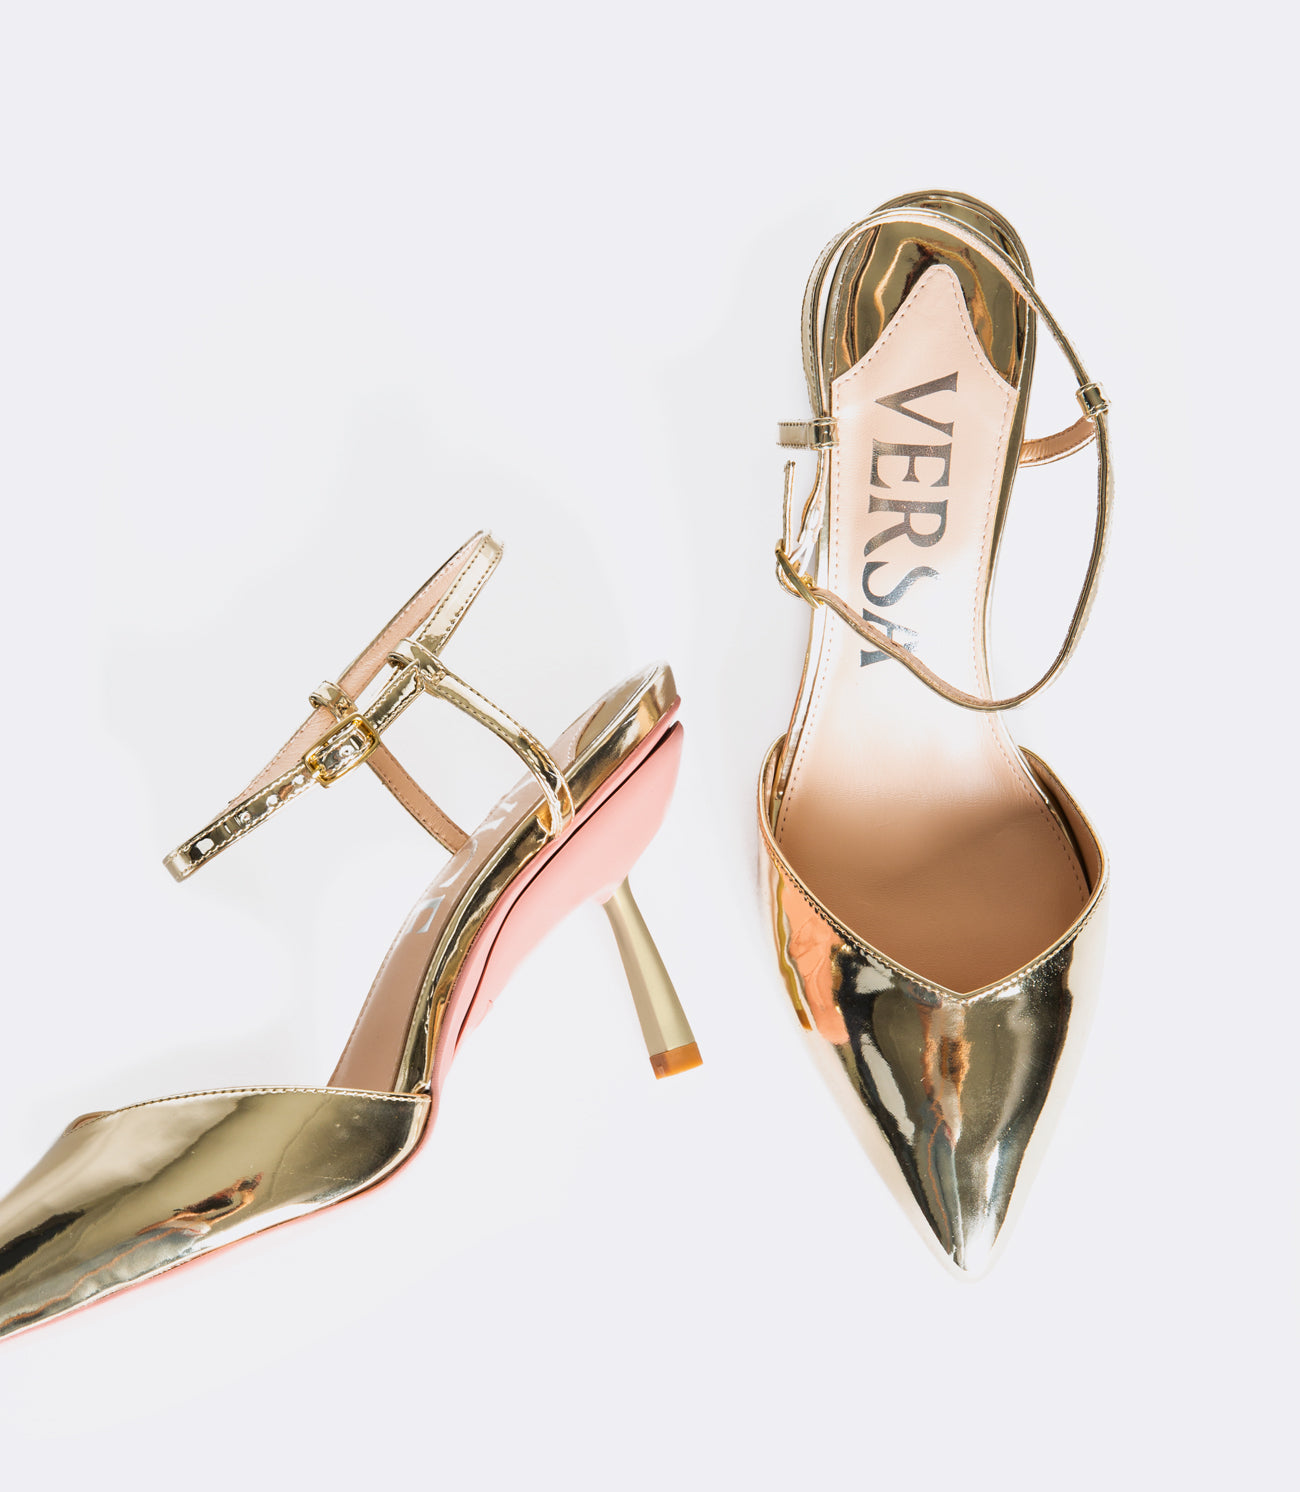 5 inch gold sparkly heels. Lightly worn. - Depop